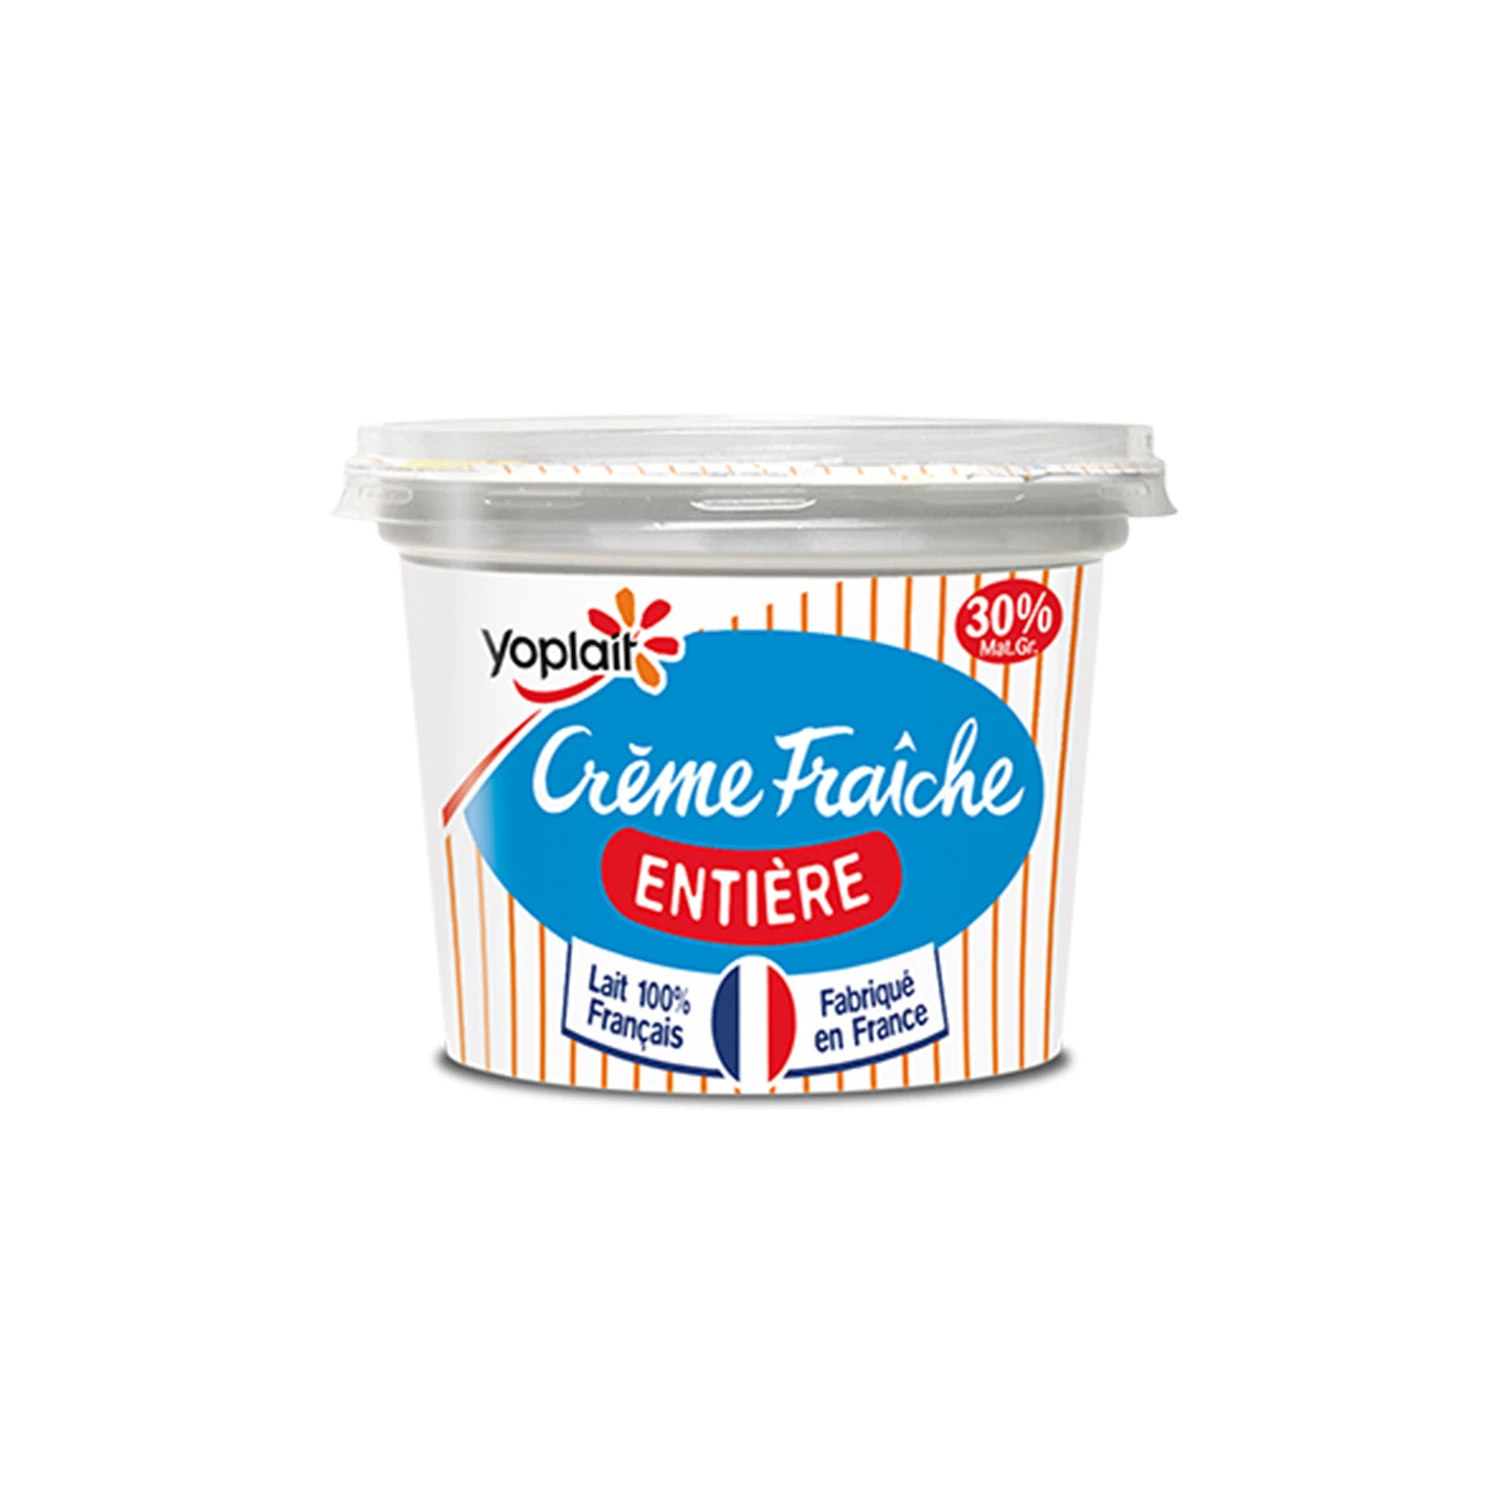 Crème Fraiche Épaisse 30 190 克